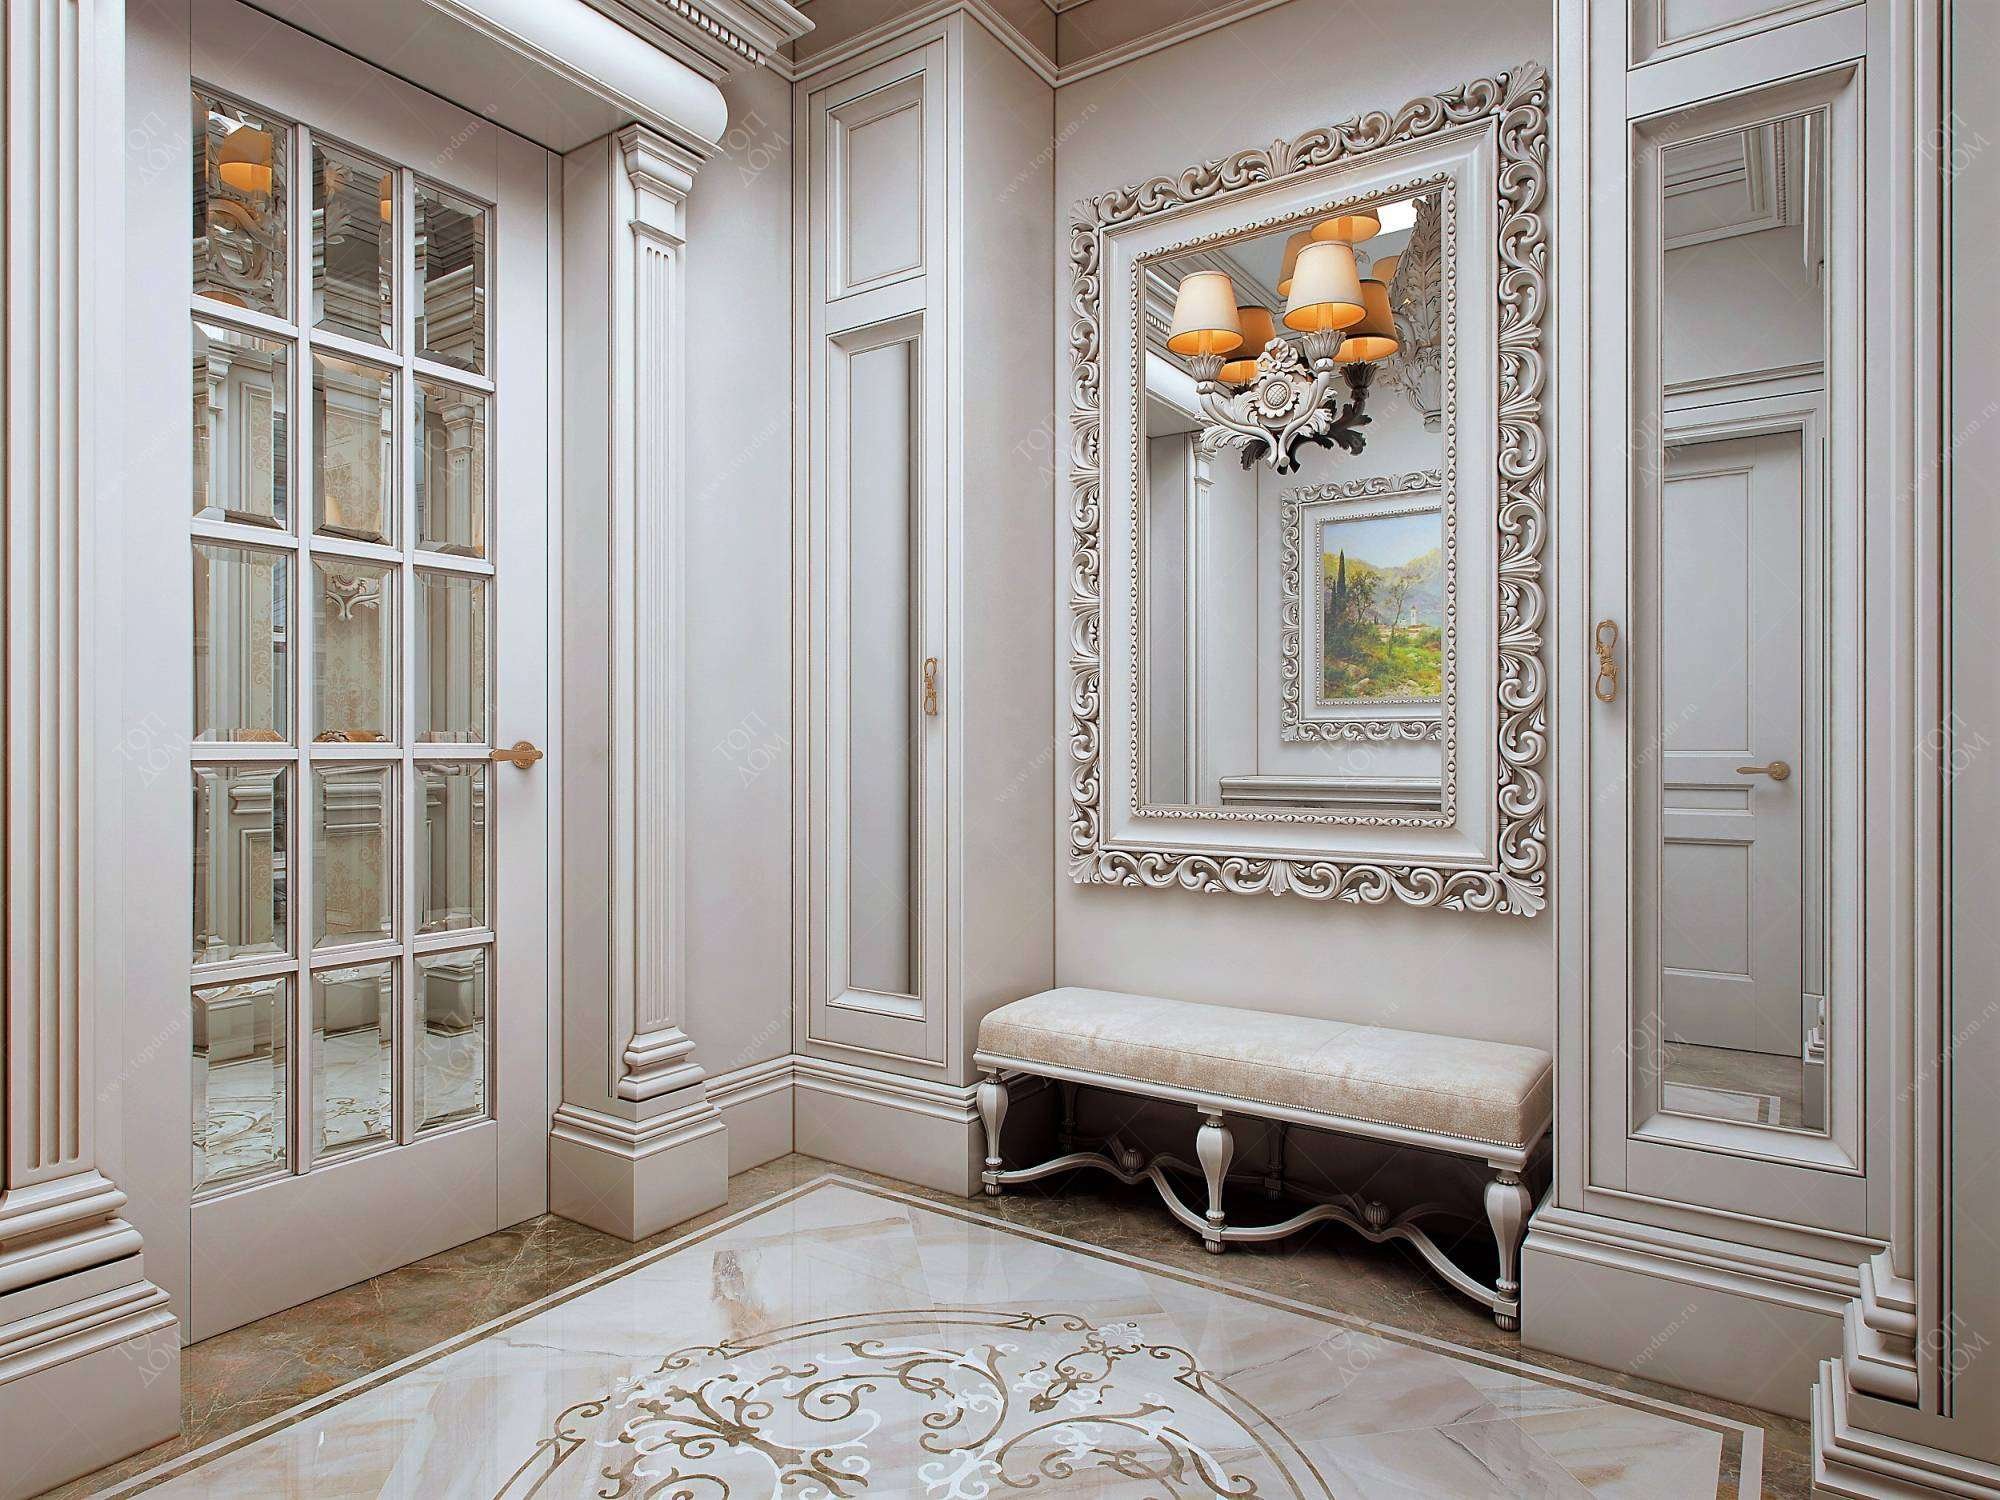 Красивые интерьеры комнаты в классическом стиле - главные идеи и элементы дизайна